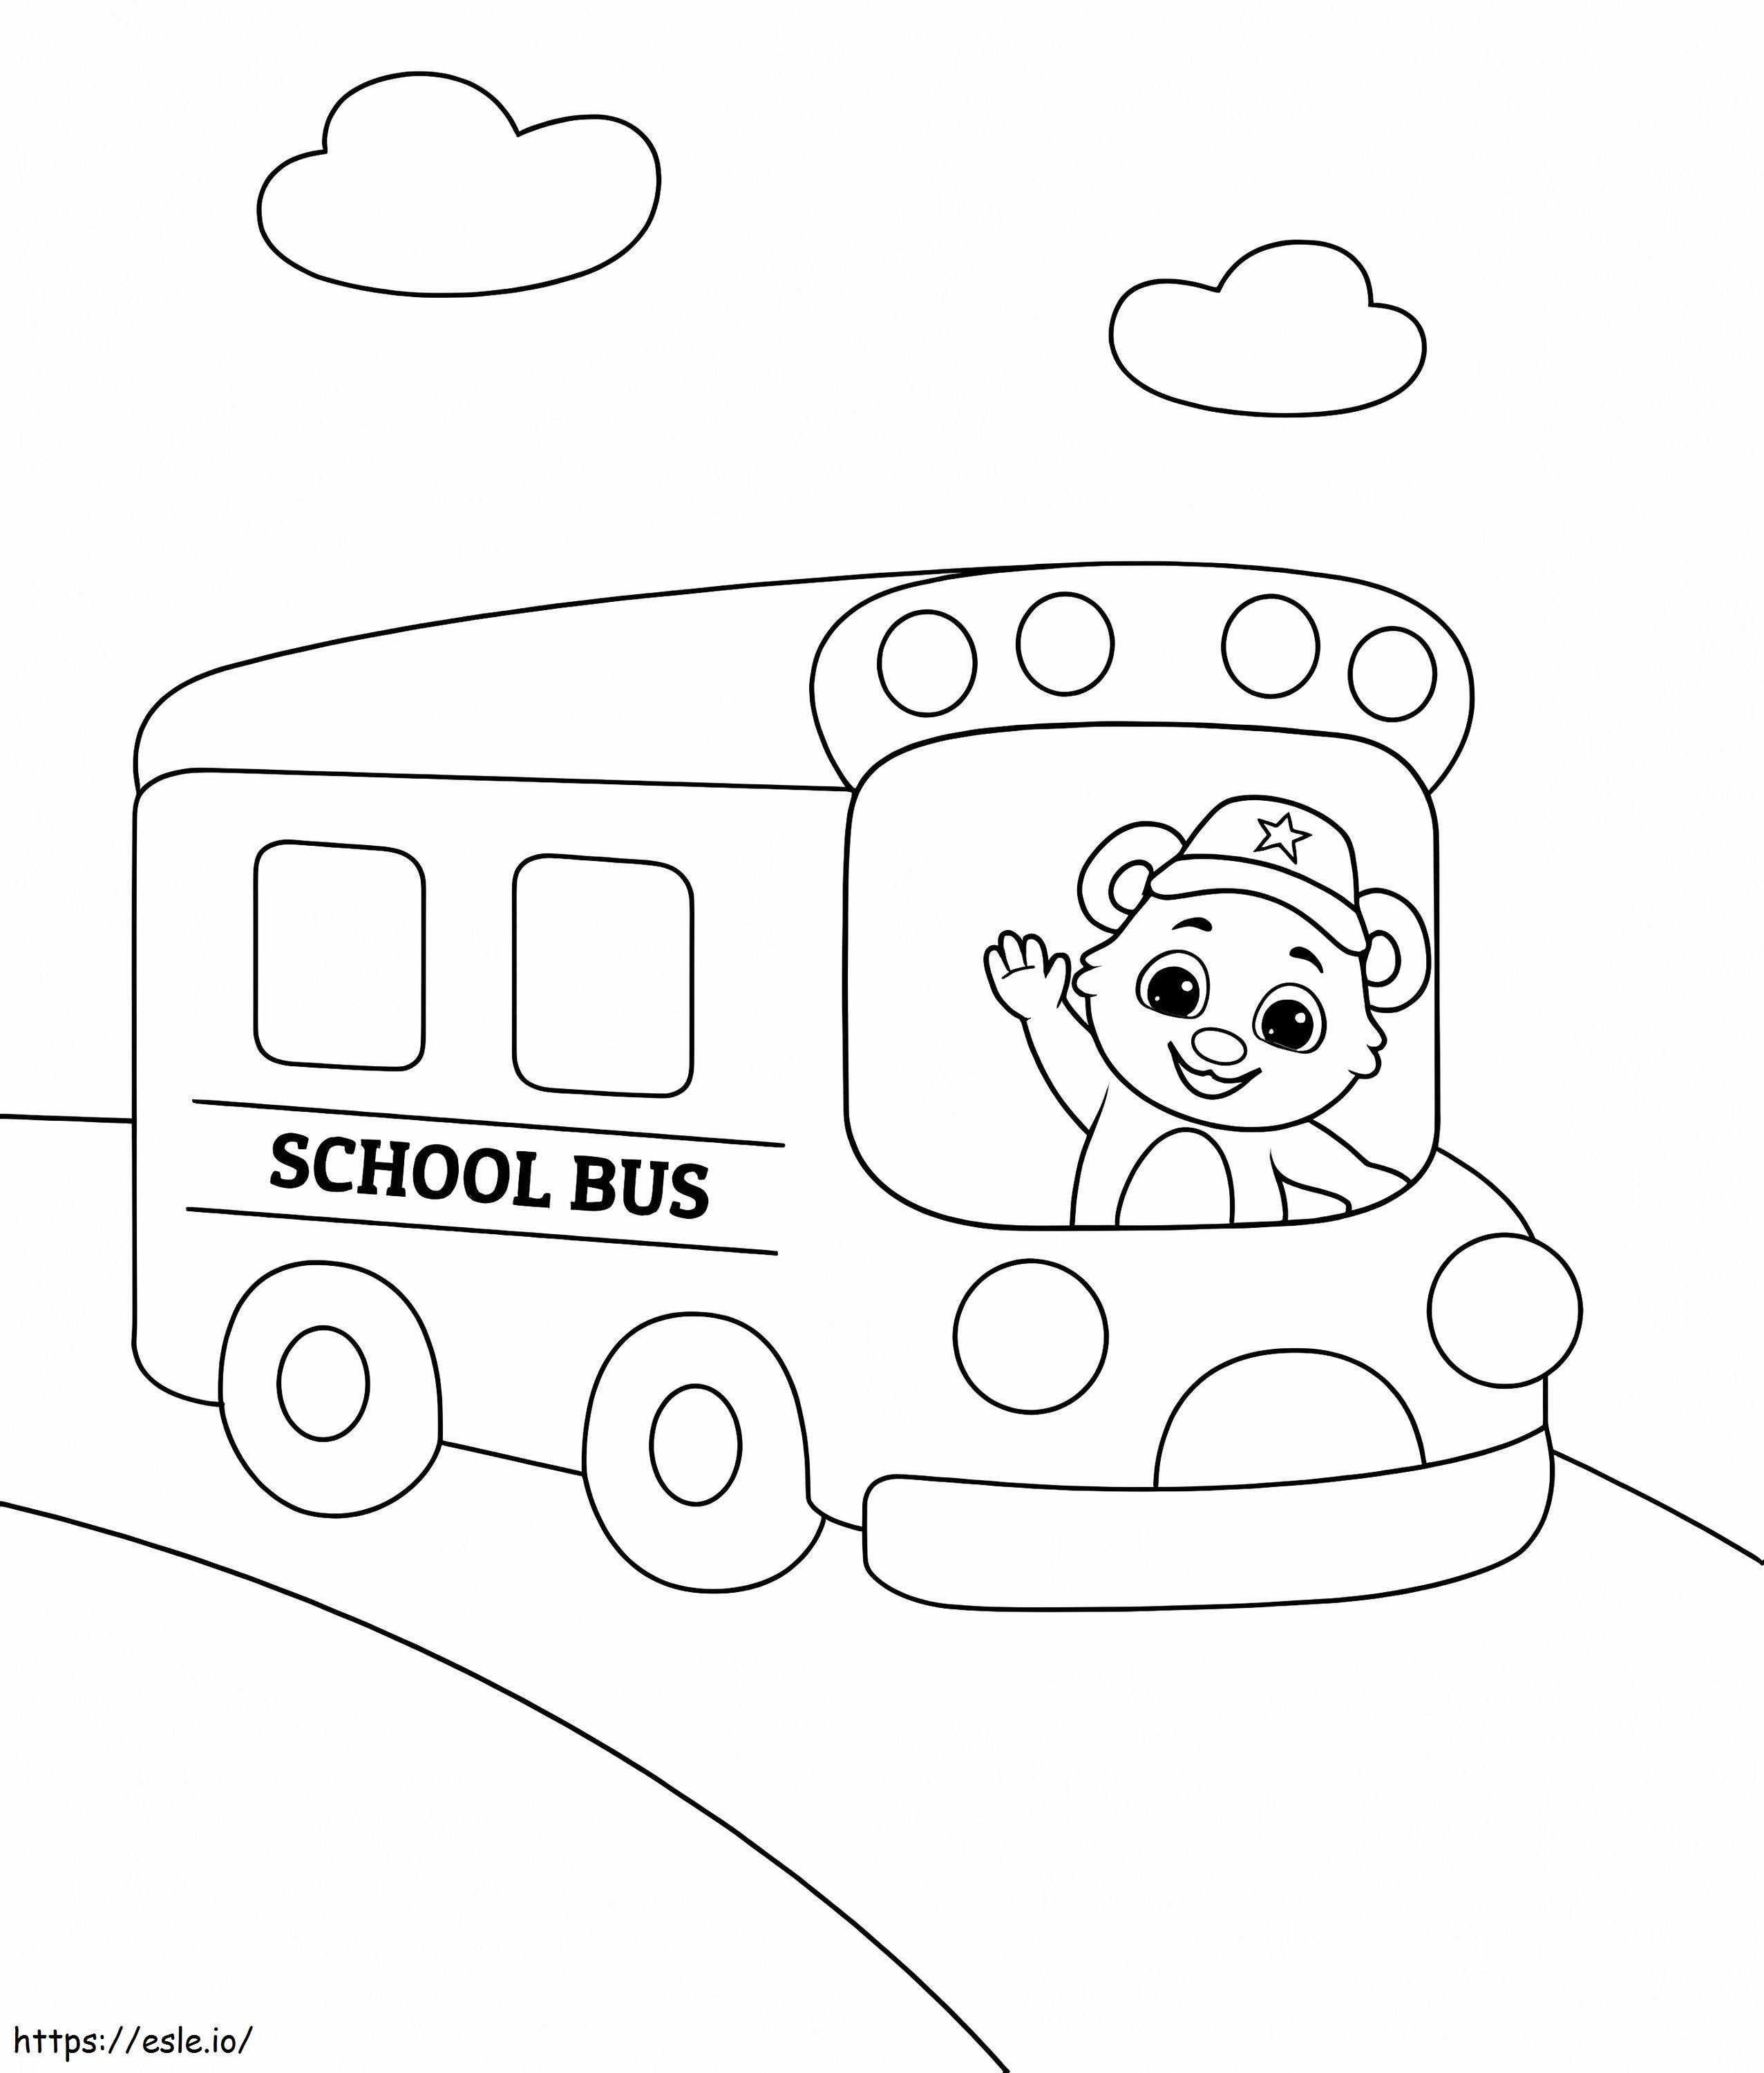 Ursul în autobuzul școlar de colorat